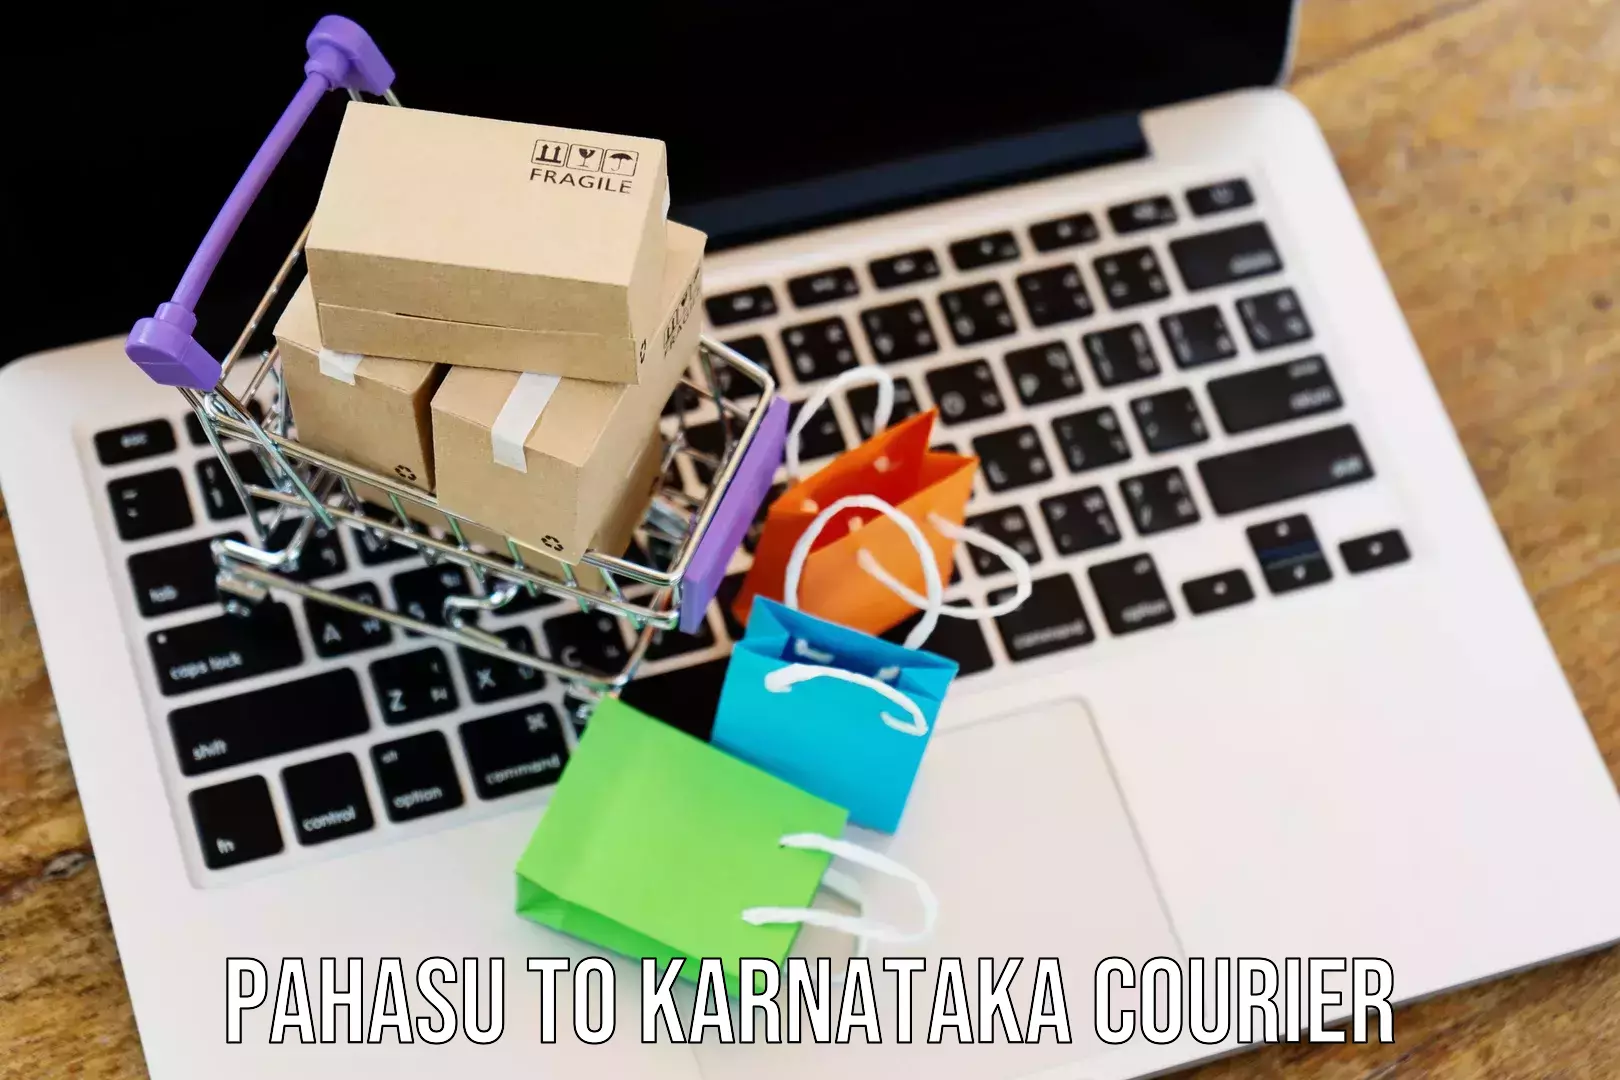 Reliable courier service Pahasu to Ukkadagatri